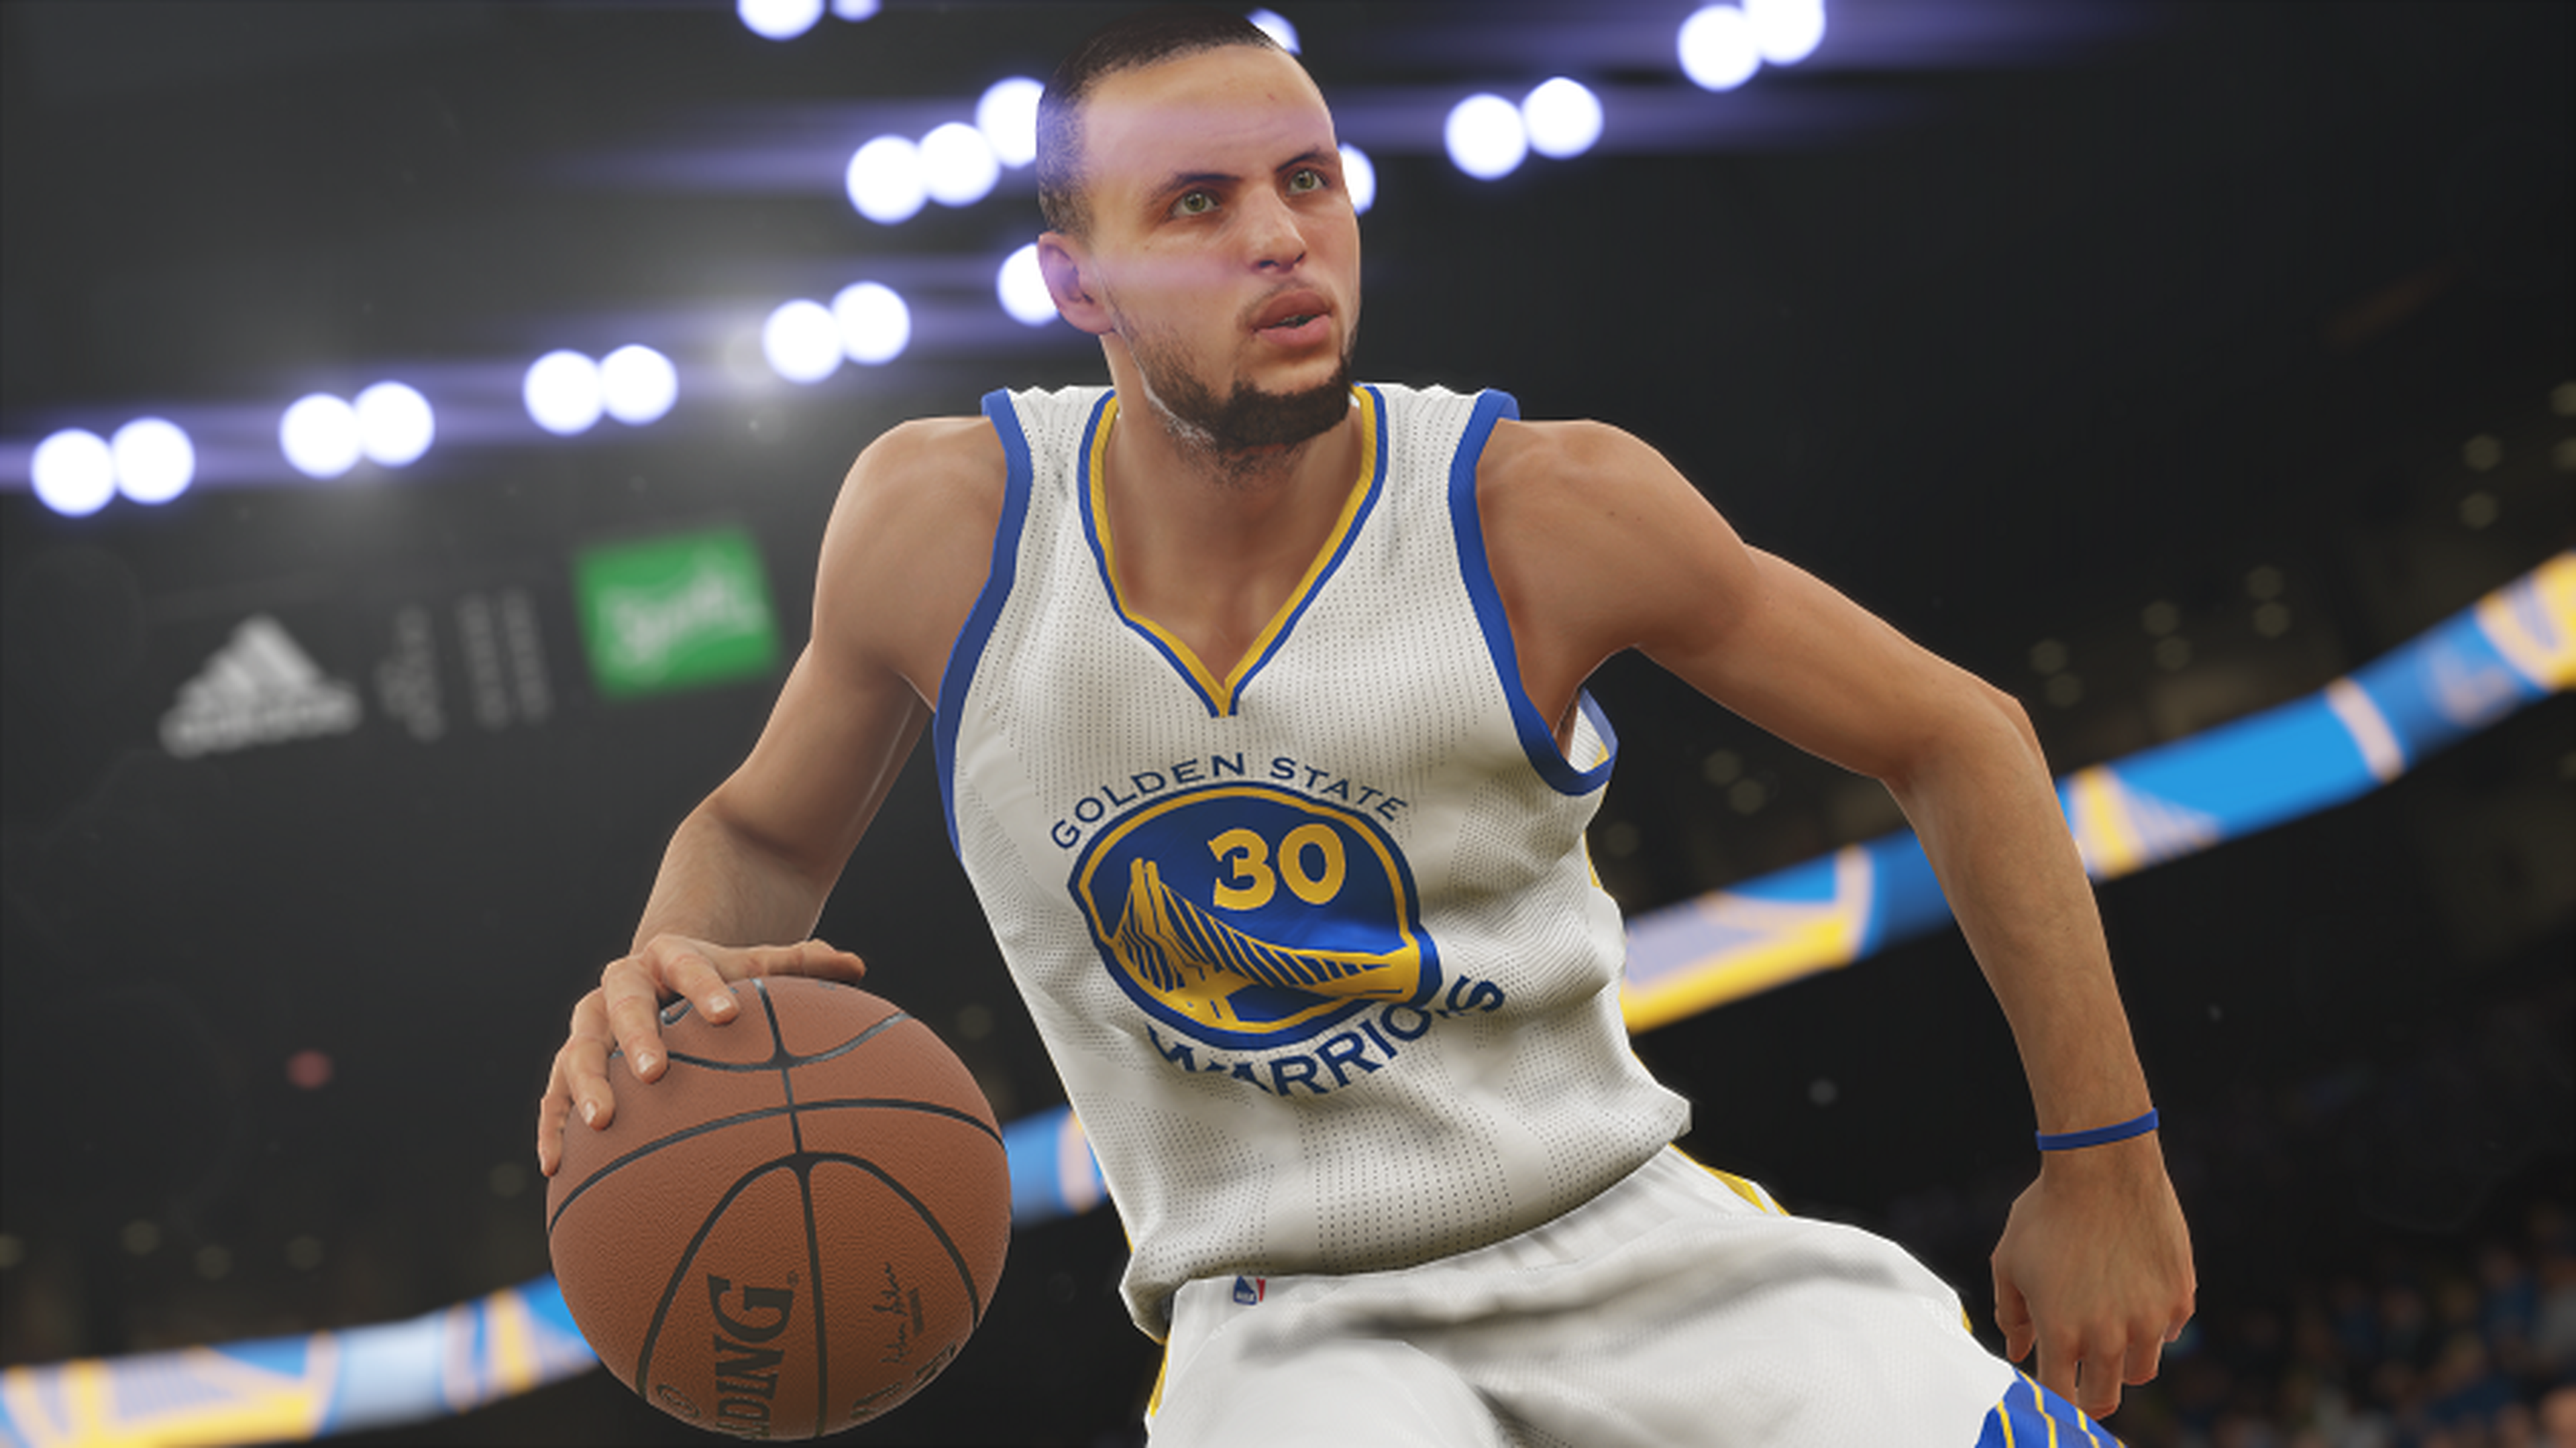 Análisis de NBA 2K15 para PS4, Xbox One y PC